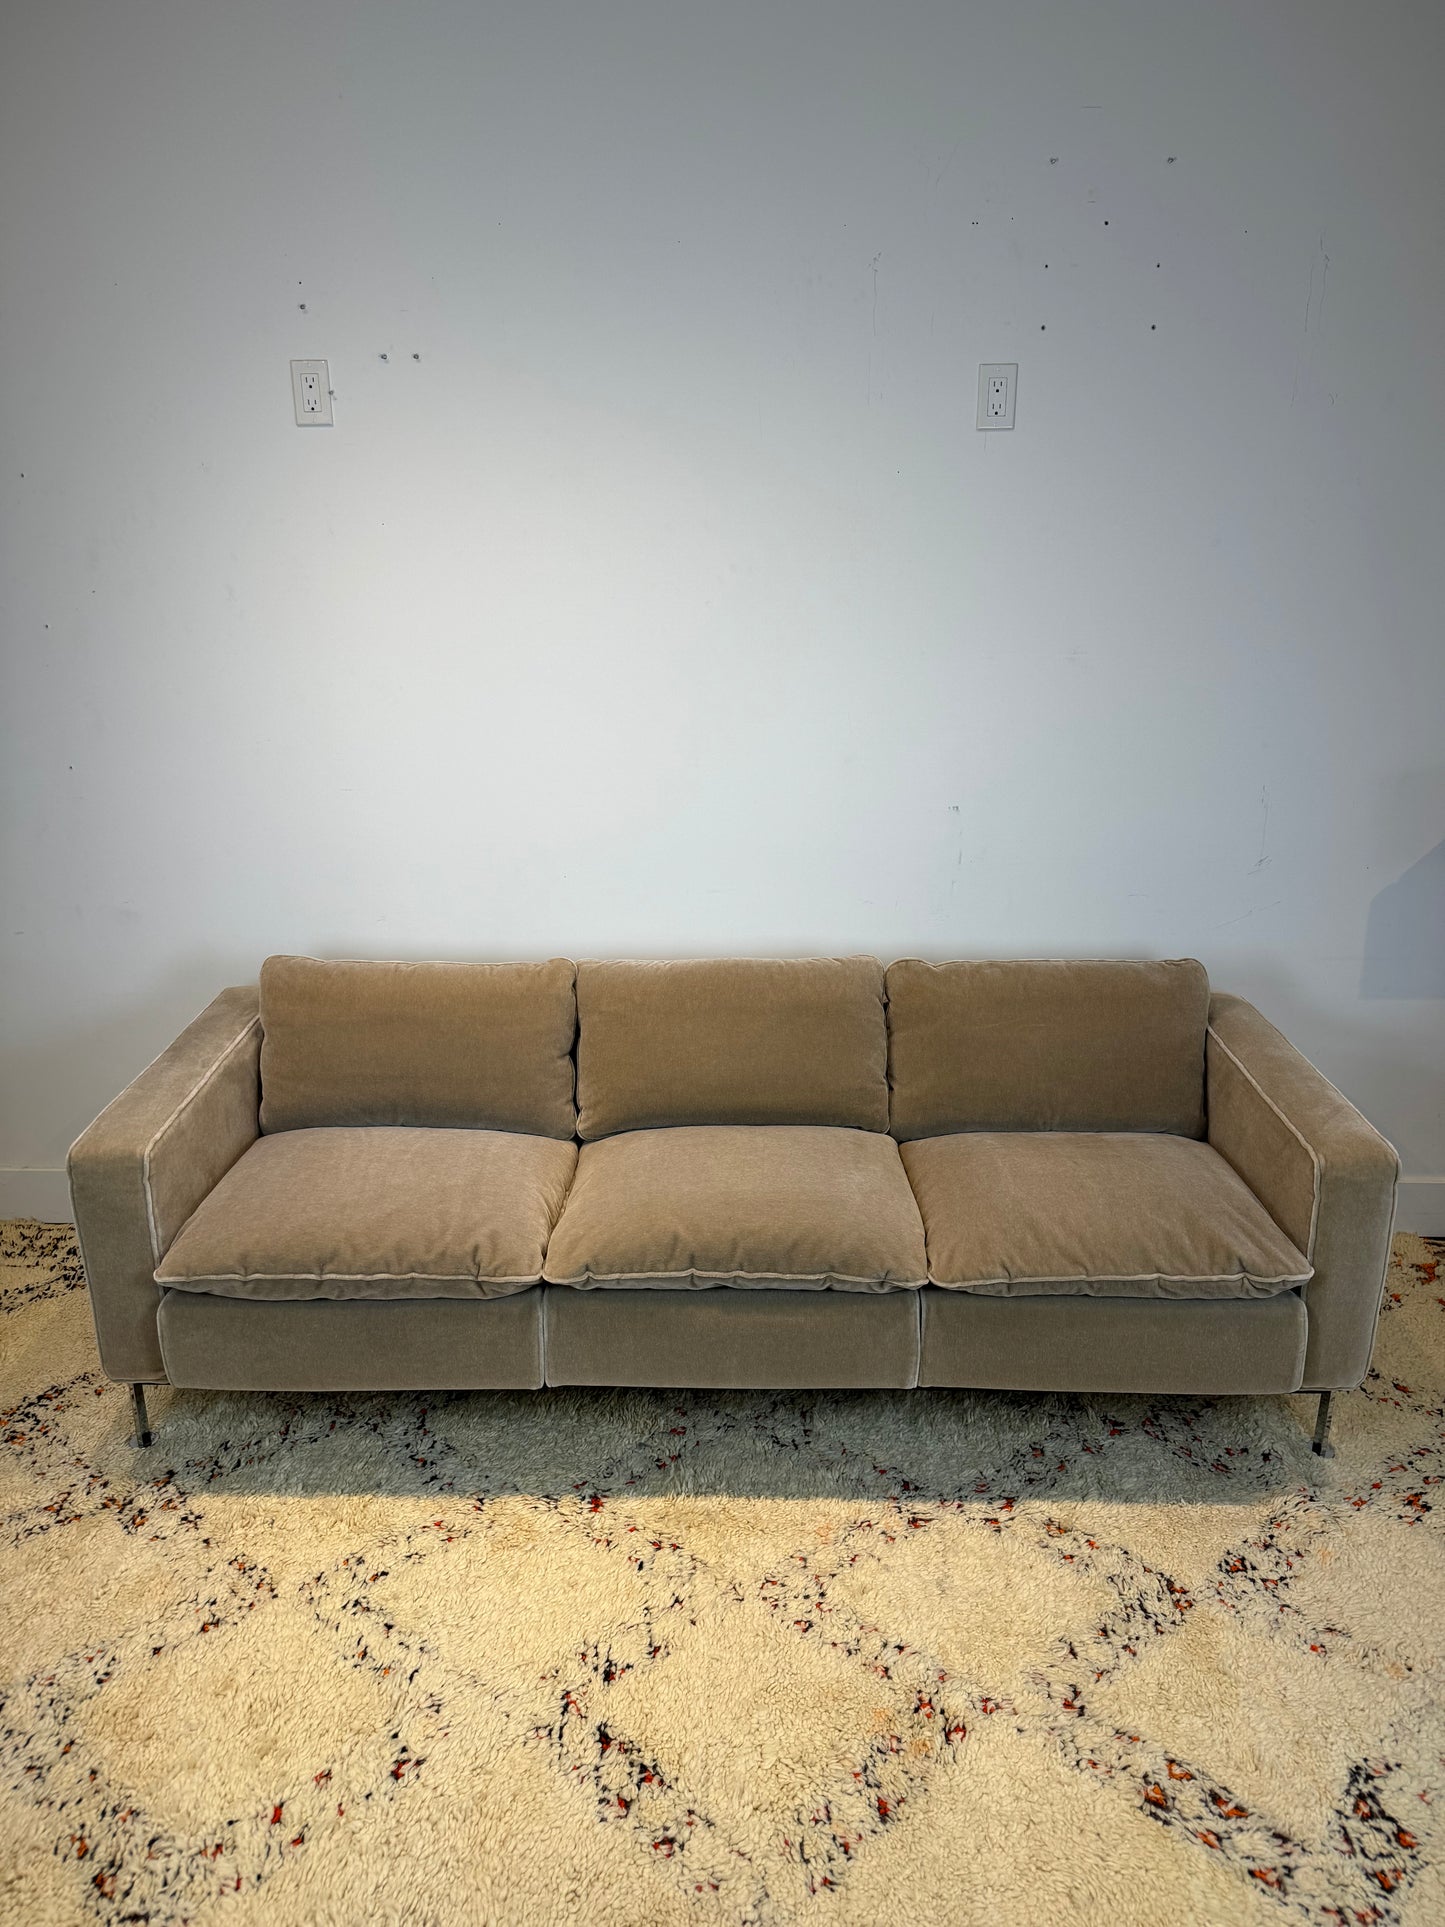 Robert Haussmann RH-302 "Lucerne" Sofa in Mohair